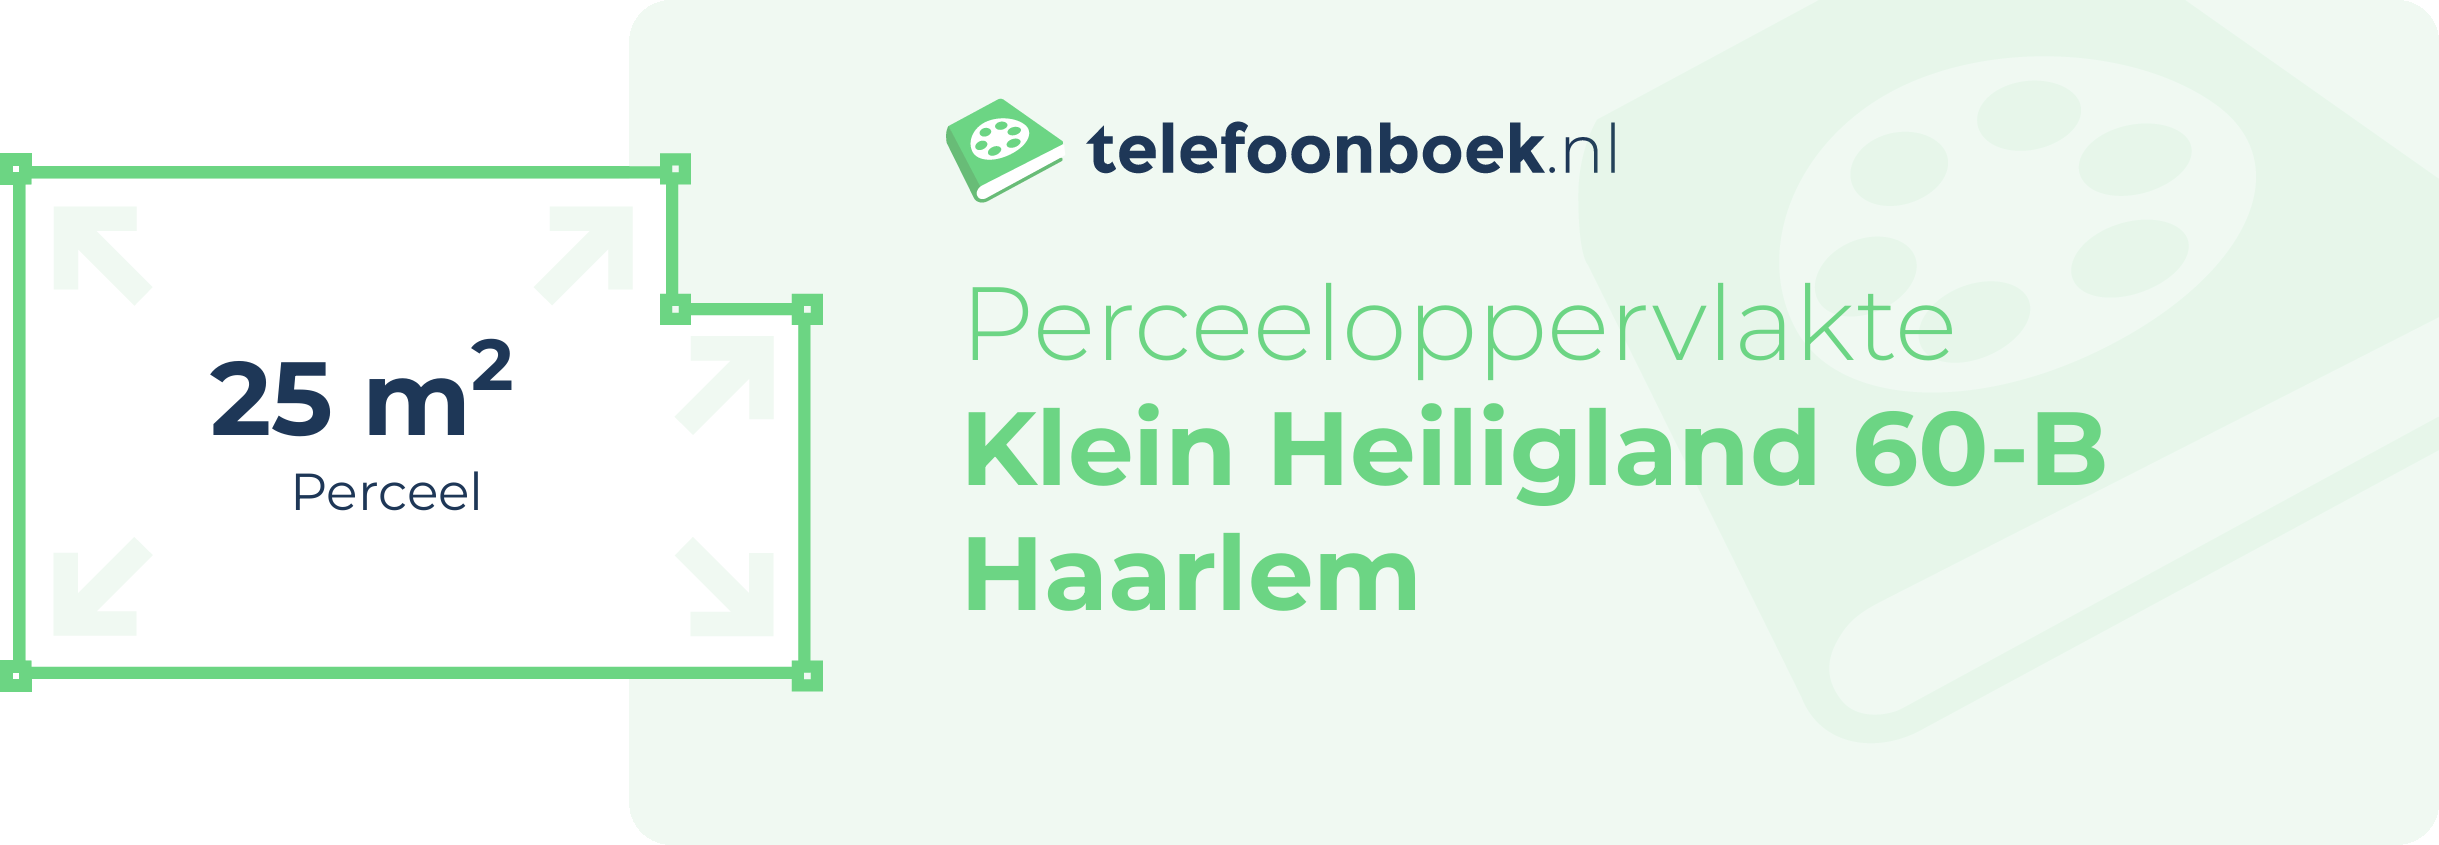 Perceeloppervlakte Klein Heiligland 60-B Haarlem